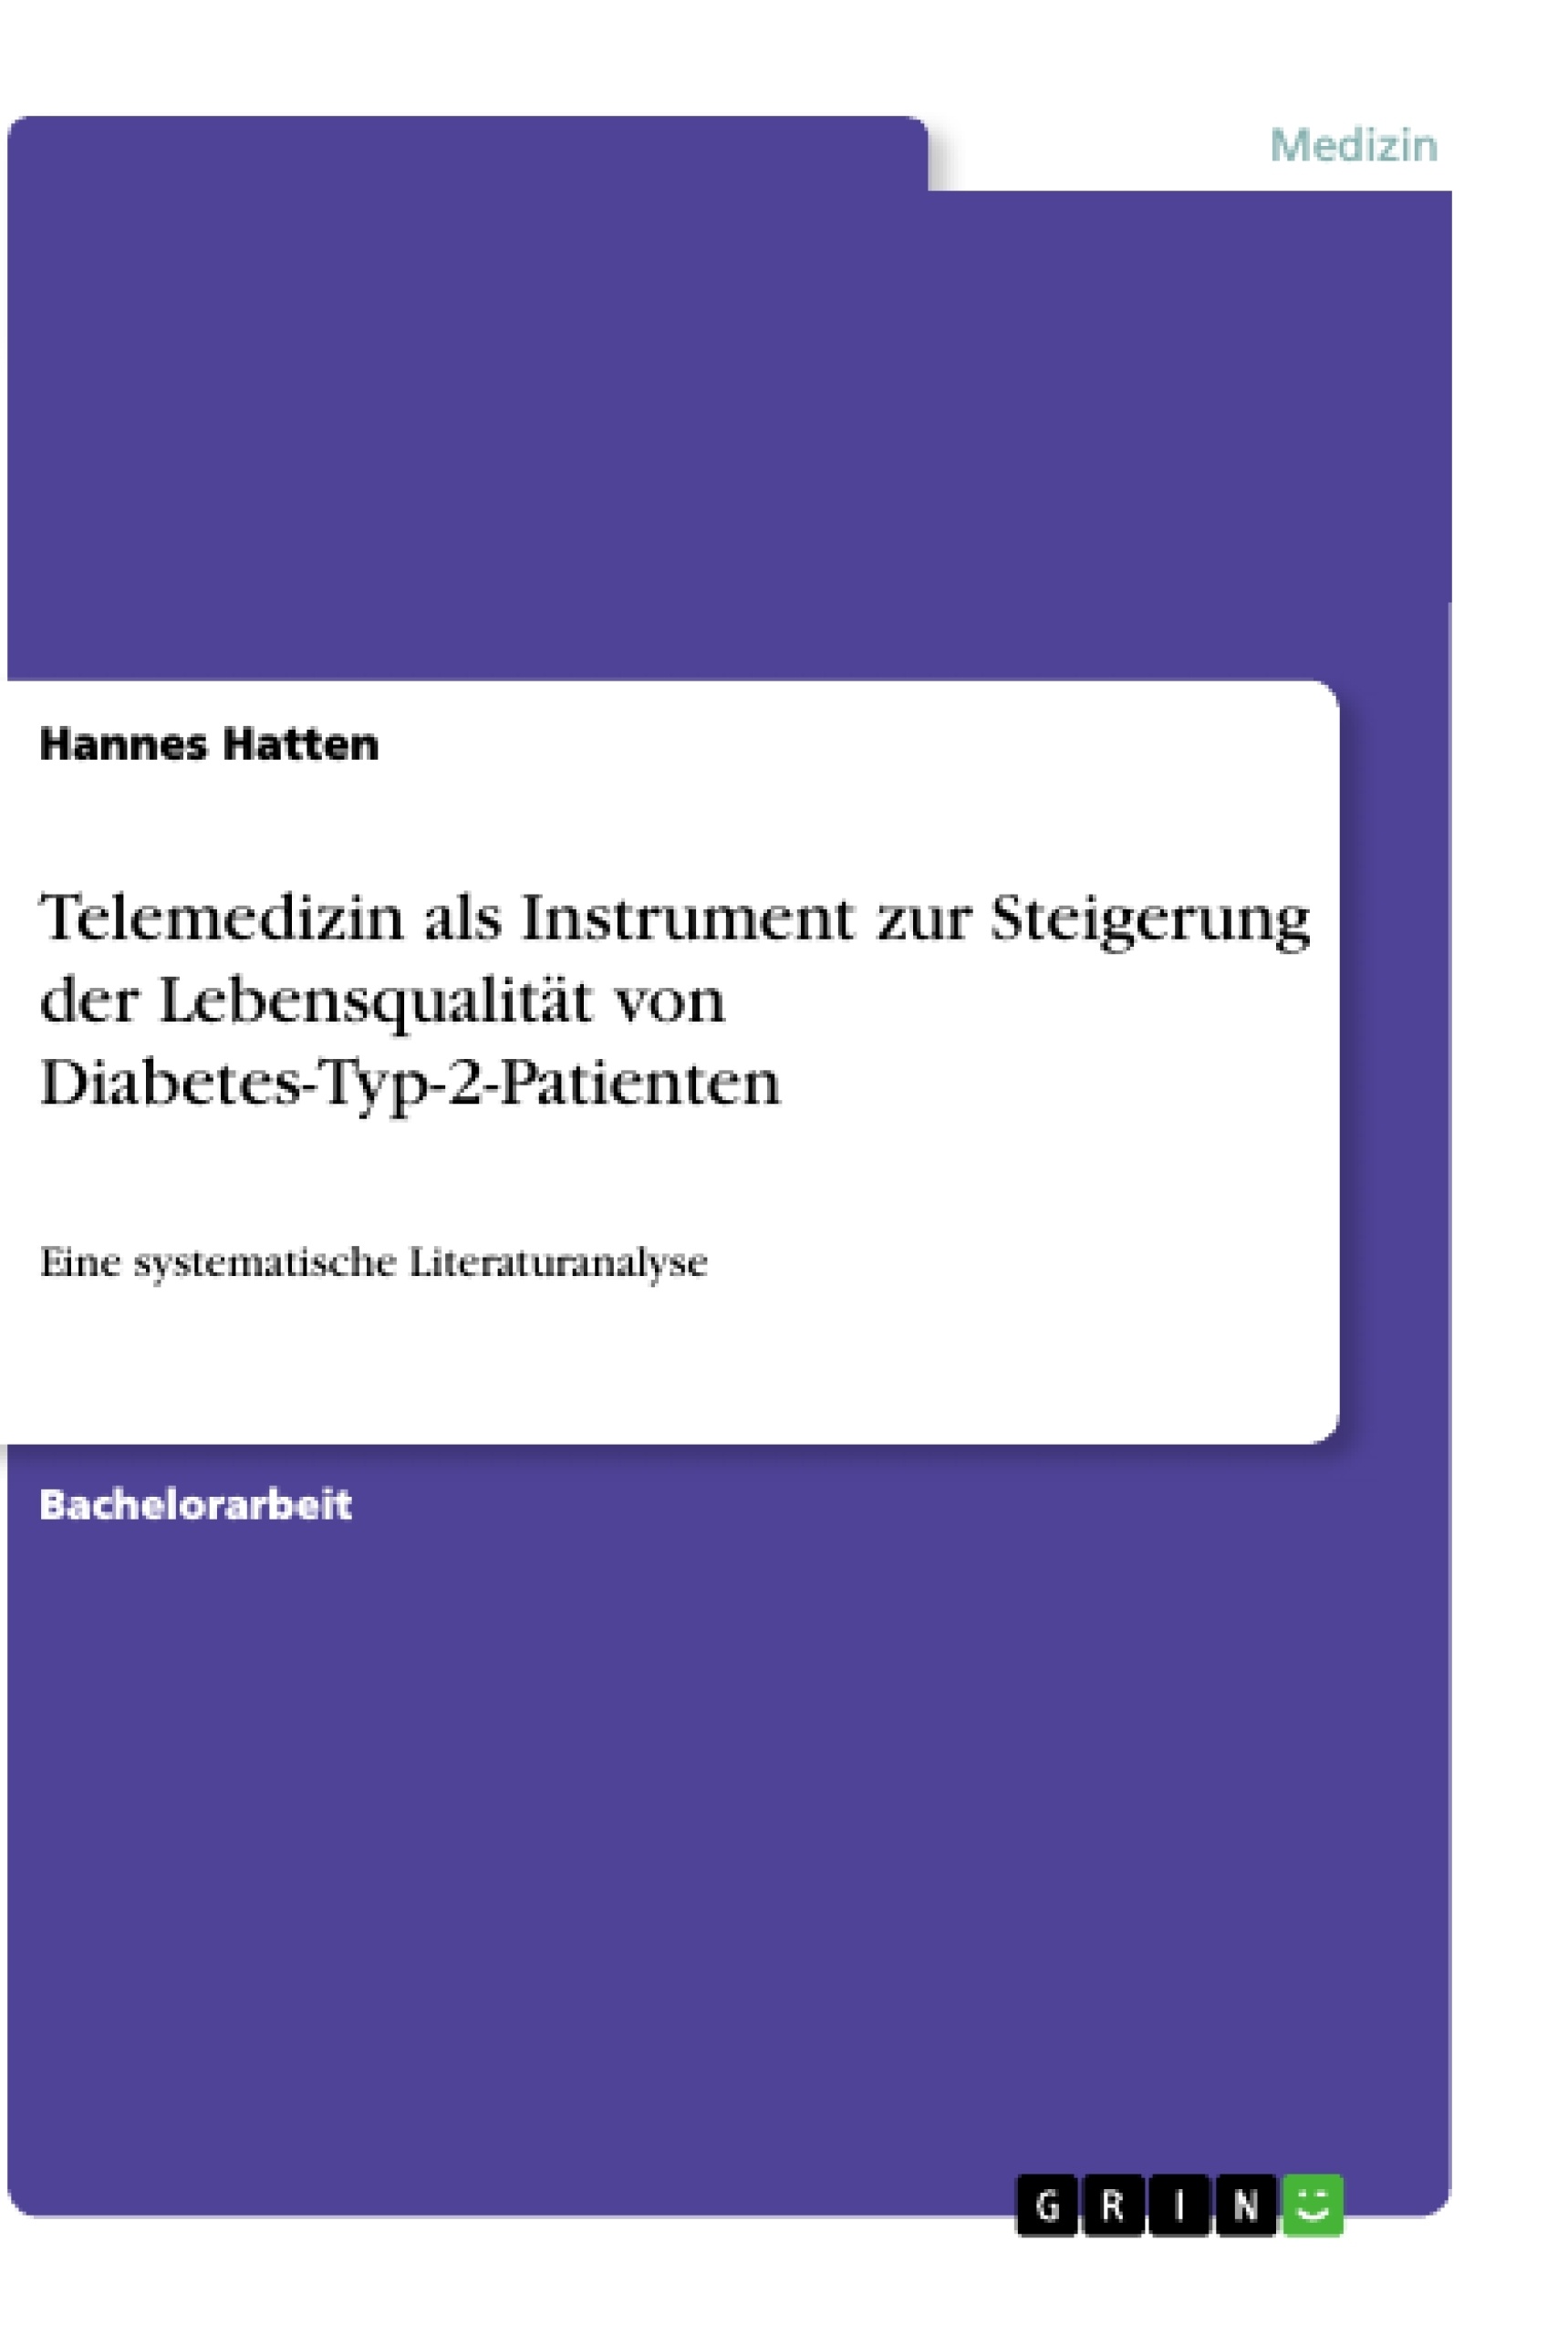 Titre: Telemedizin als Instrument zur Steigerung der Lebensqualität von Diabetes-Typ-2-Patienten